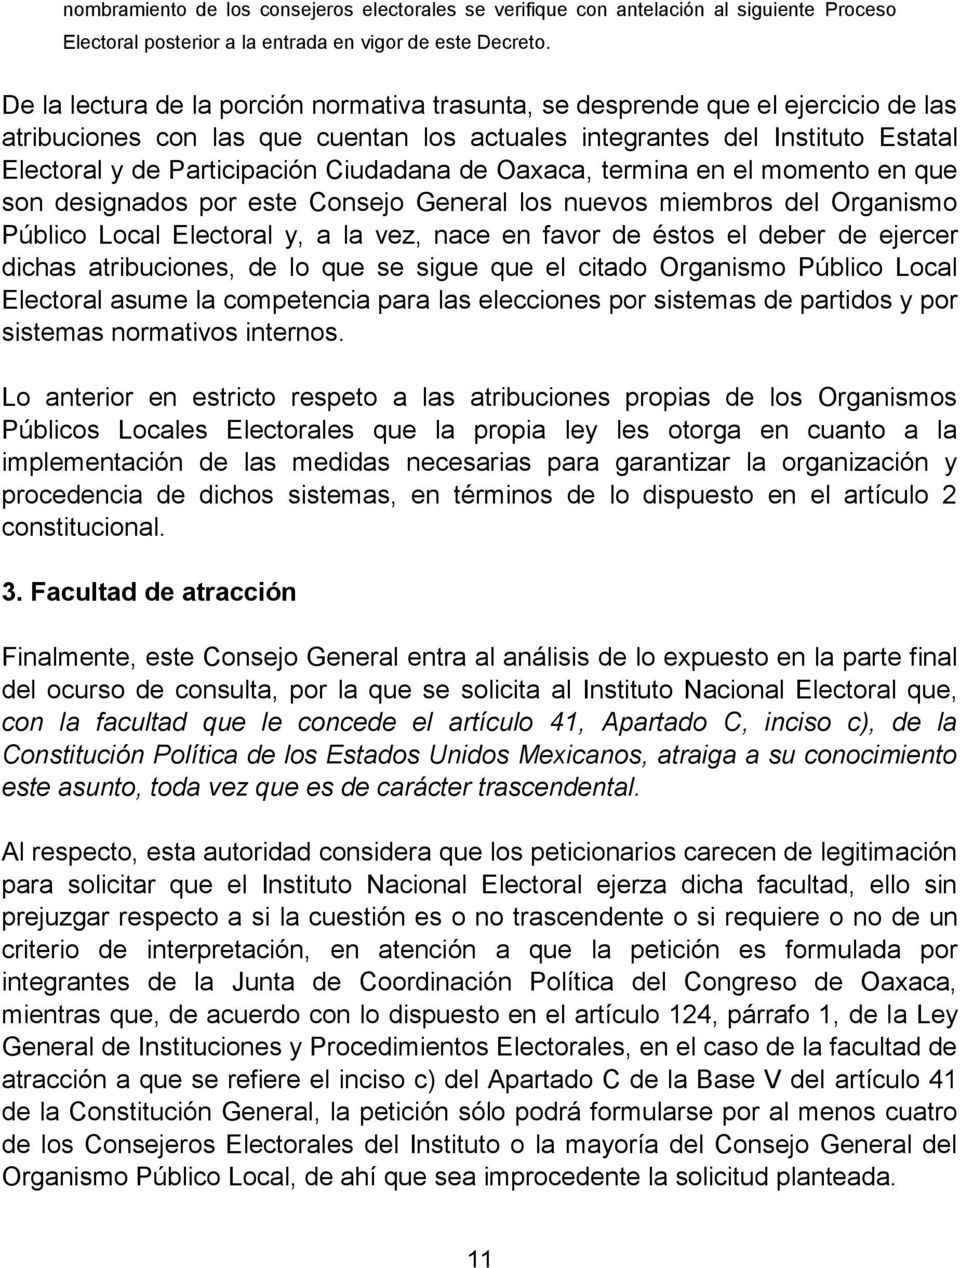 Ciudadana de Oaxaca, termina en el momento en que son designados por este Consejo General los nuevos miembros del Organismo Público Local Electoral y, a la vez, nace en favor de éstos el deber de